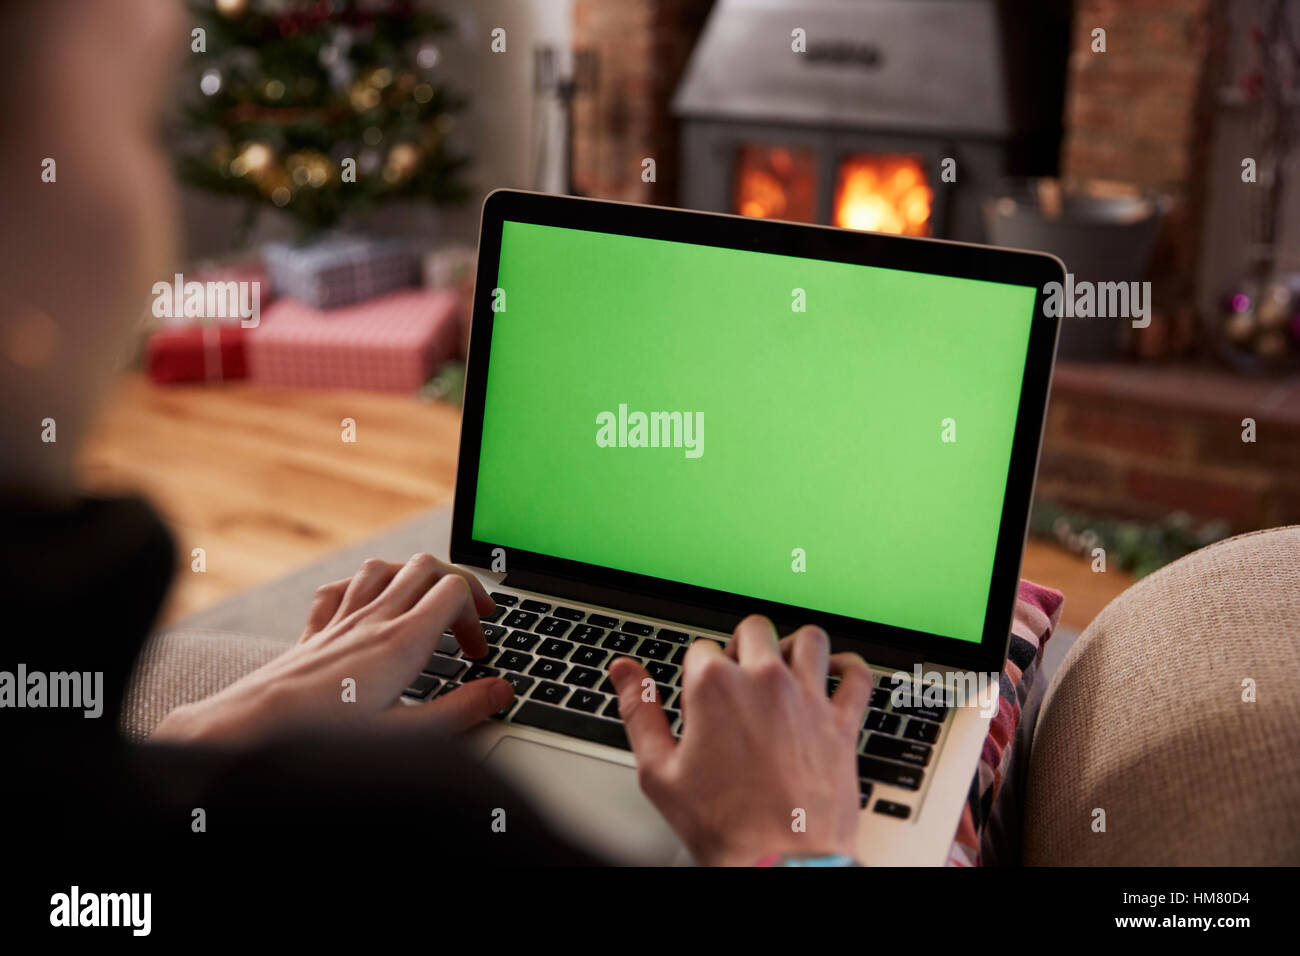 Mann mit Laptop im Zimmer für Weihnachten dekoriert Stockfoto